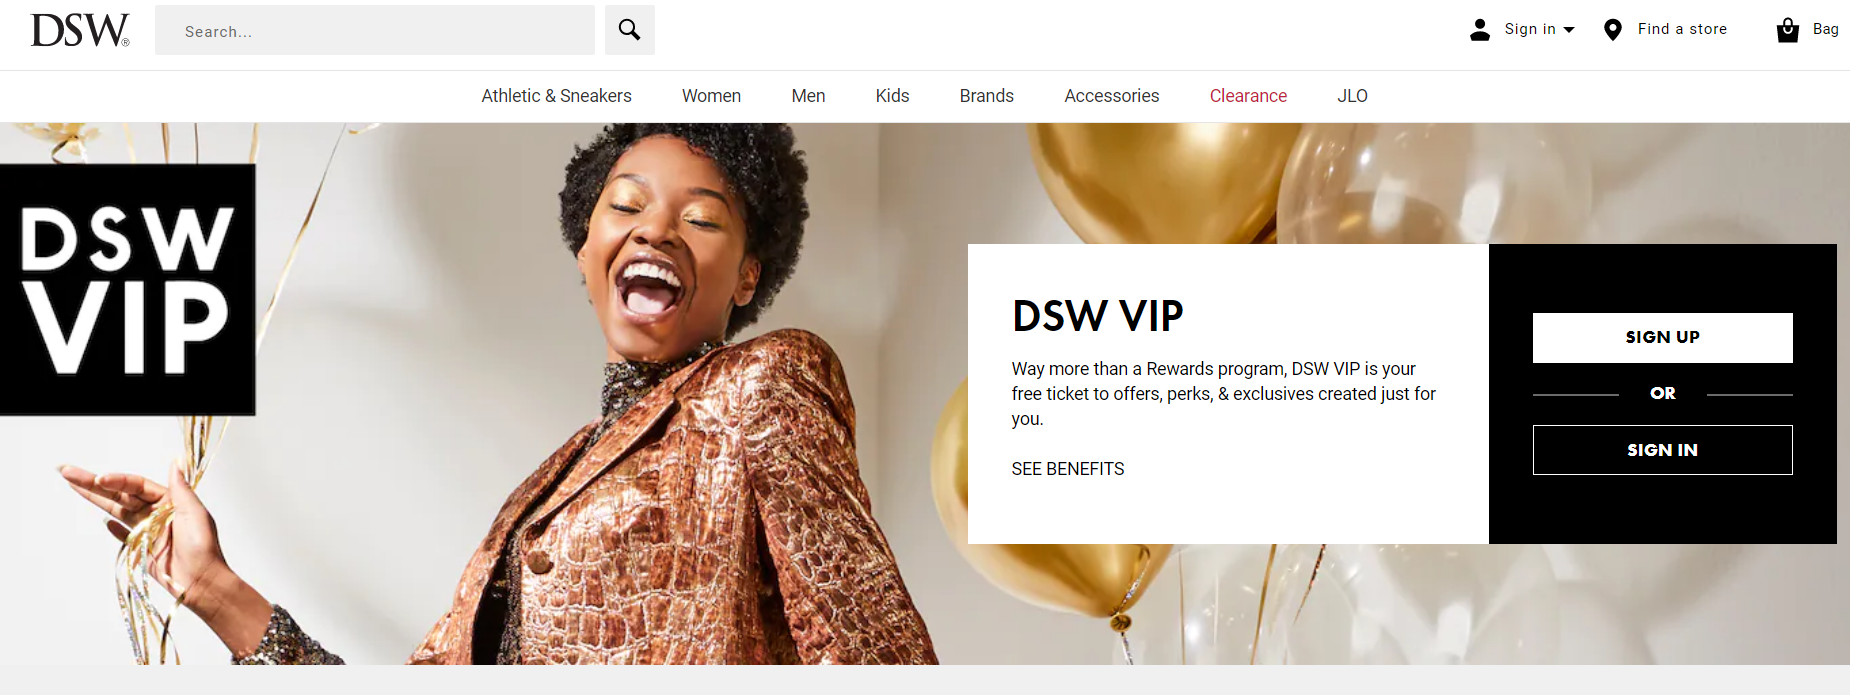 rewards page DSW VIP